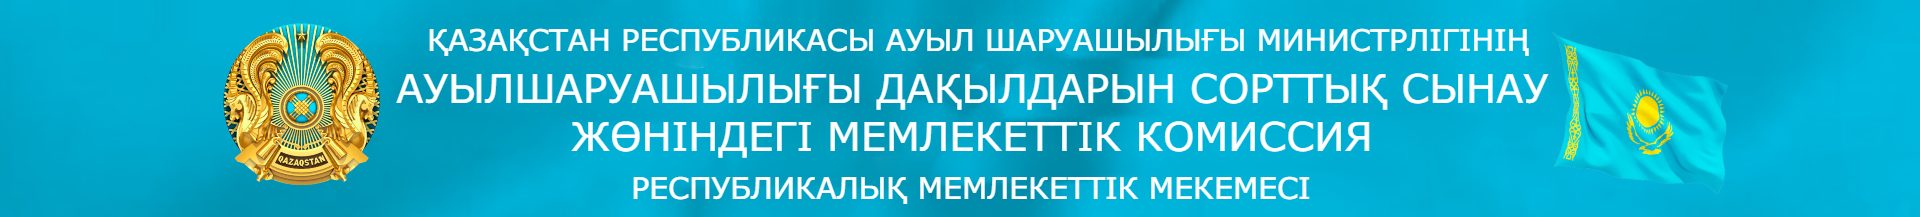  Республиканское государственное учреждение «Государственная комиссия по сортоиспытанию сельскохозяйственных культур» Министерства сельского хозяйства Республики Казахстан